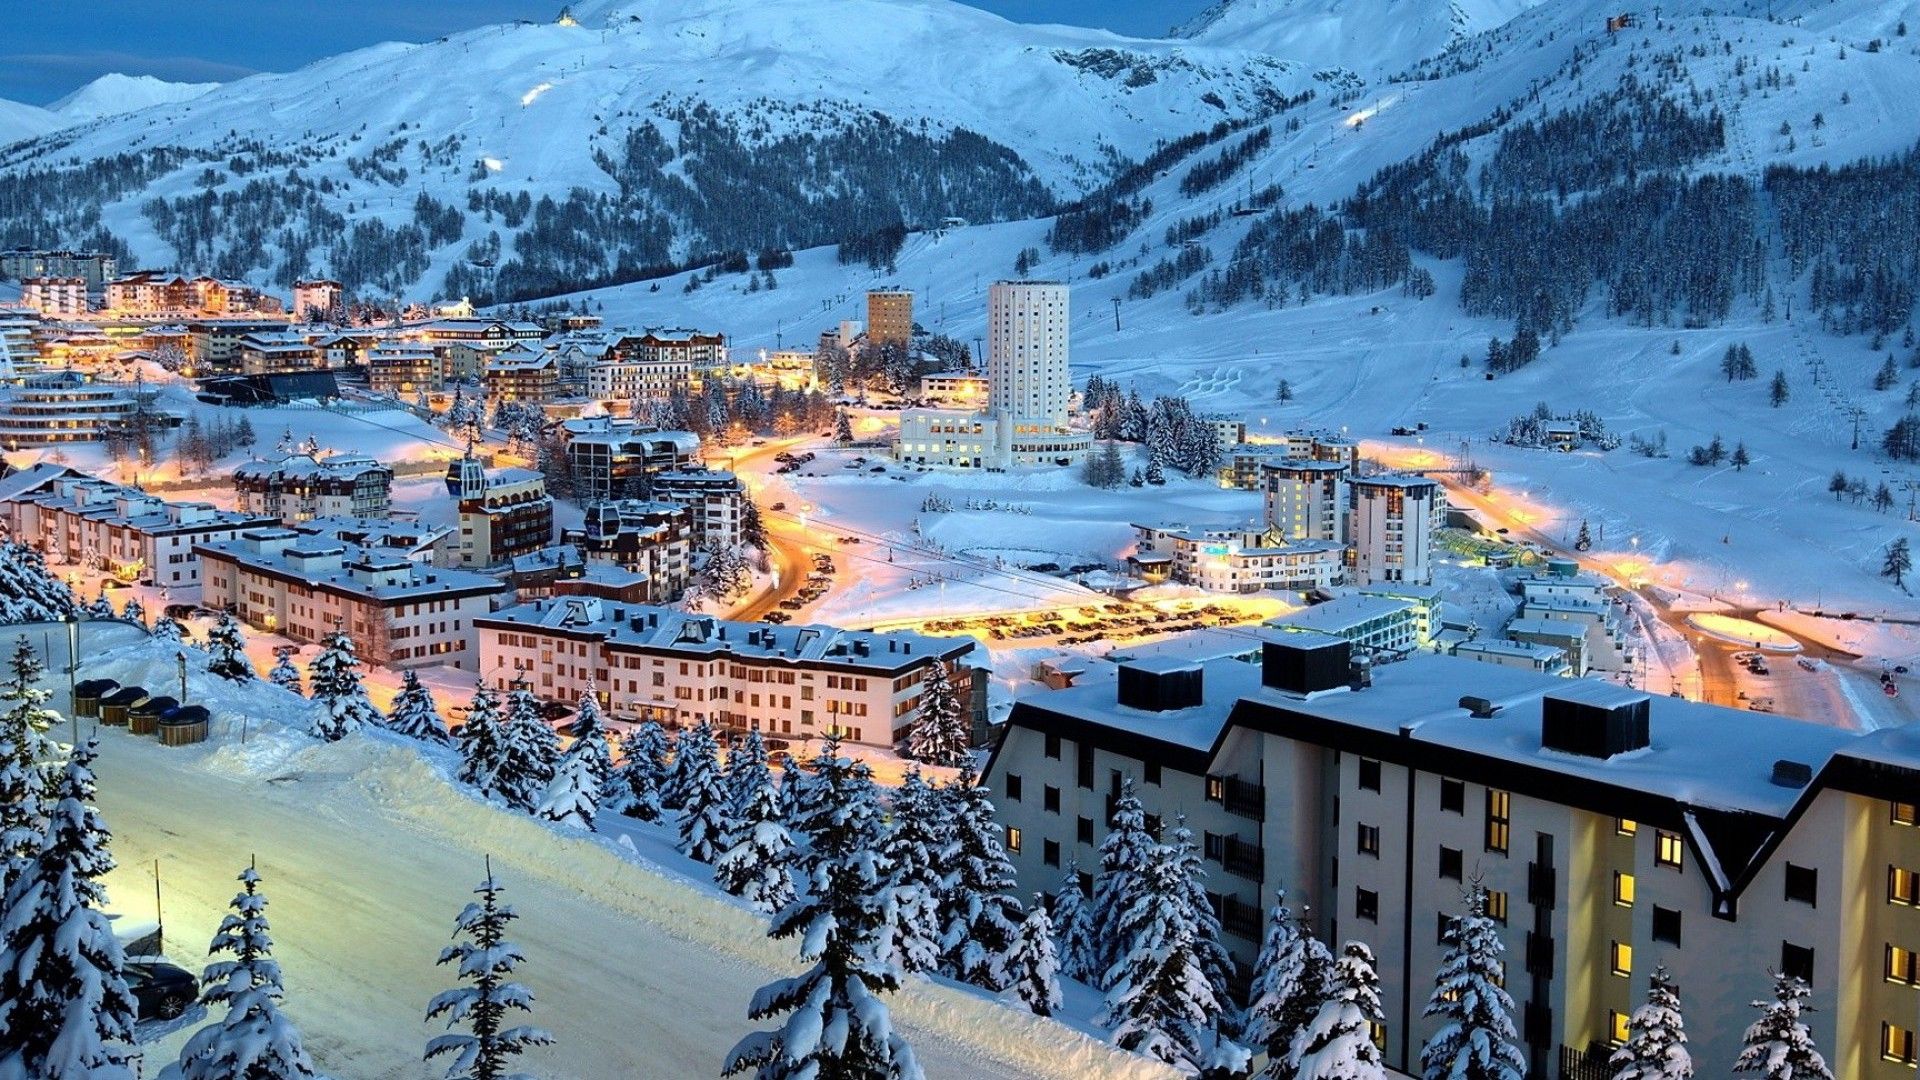 Andorra Snow - Andorre Neige | Adventures in the great, wide ...